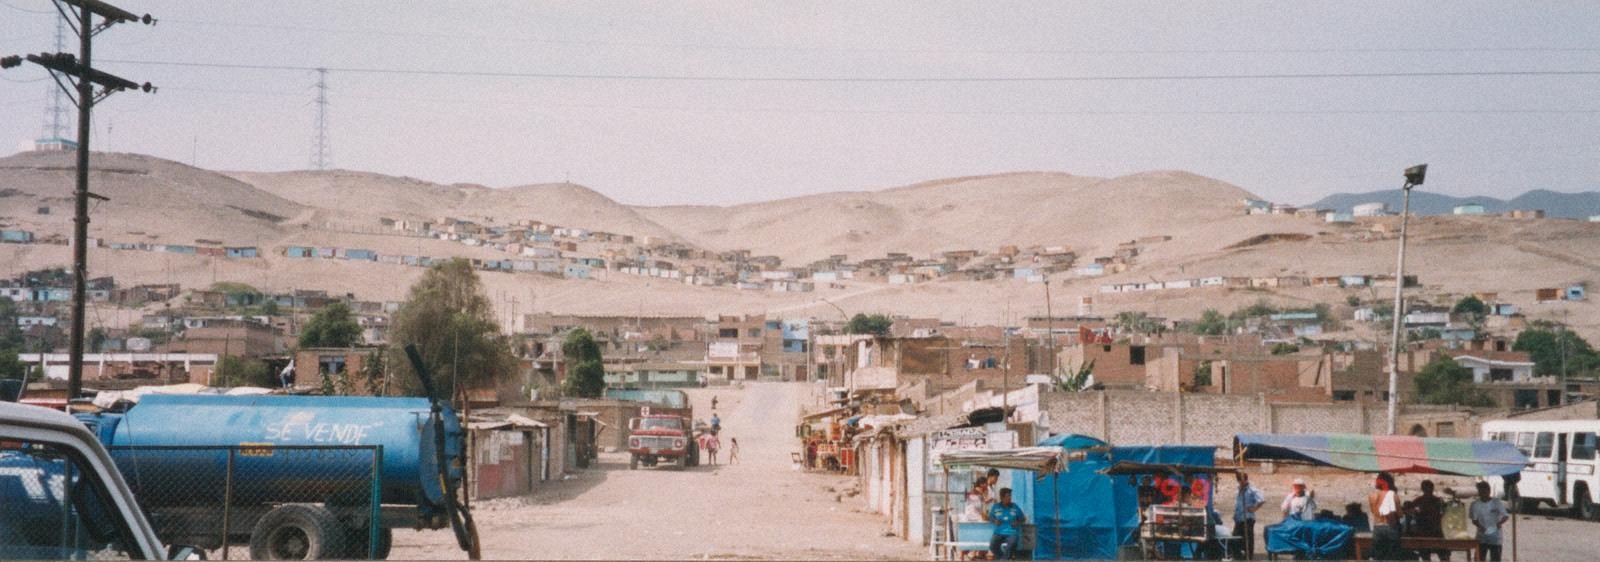 旧大里村 移民調査時の写真(ペルー)を公開しました。